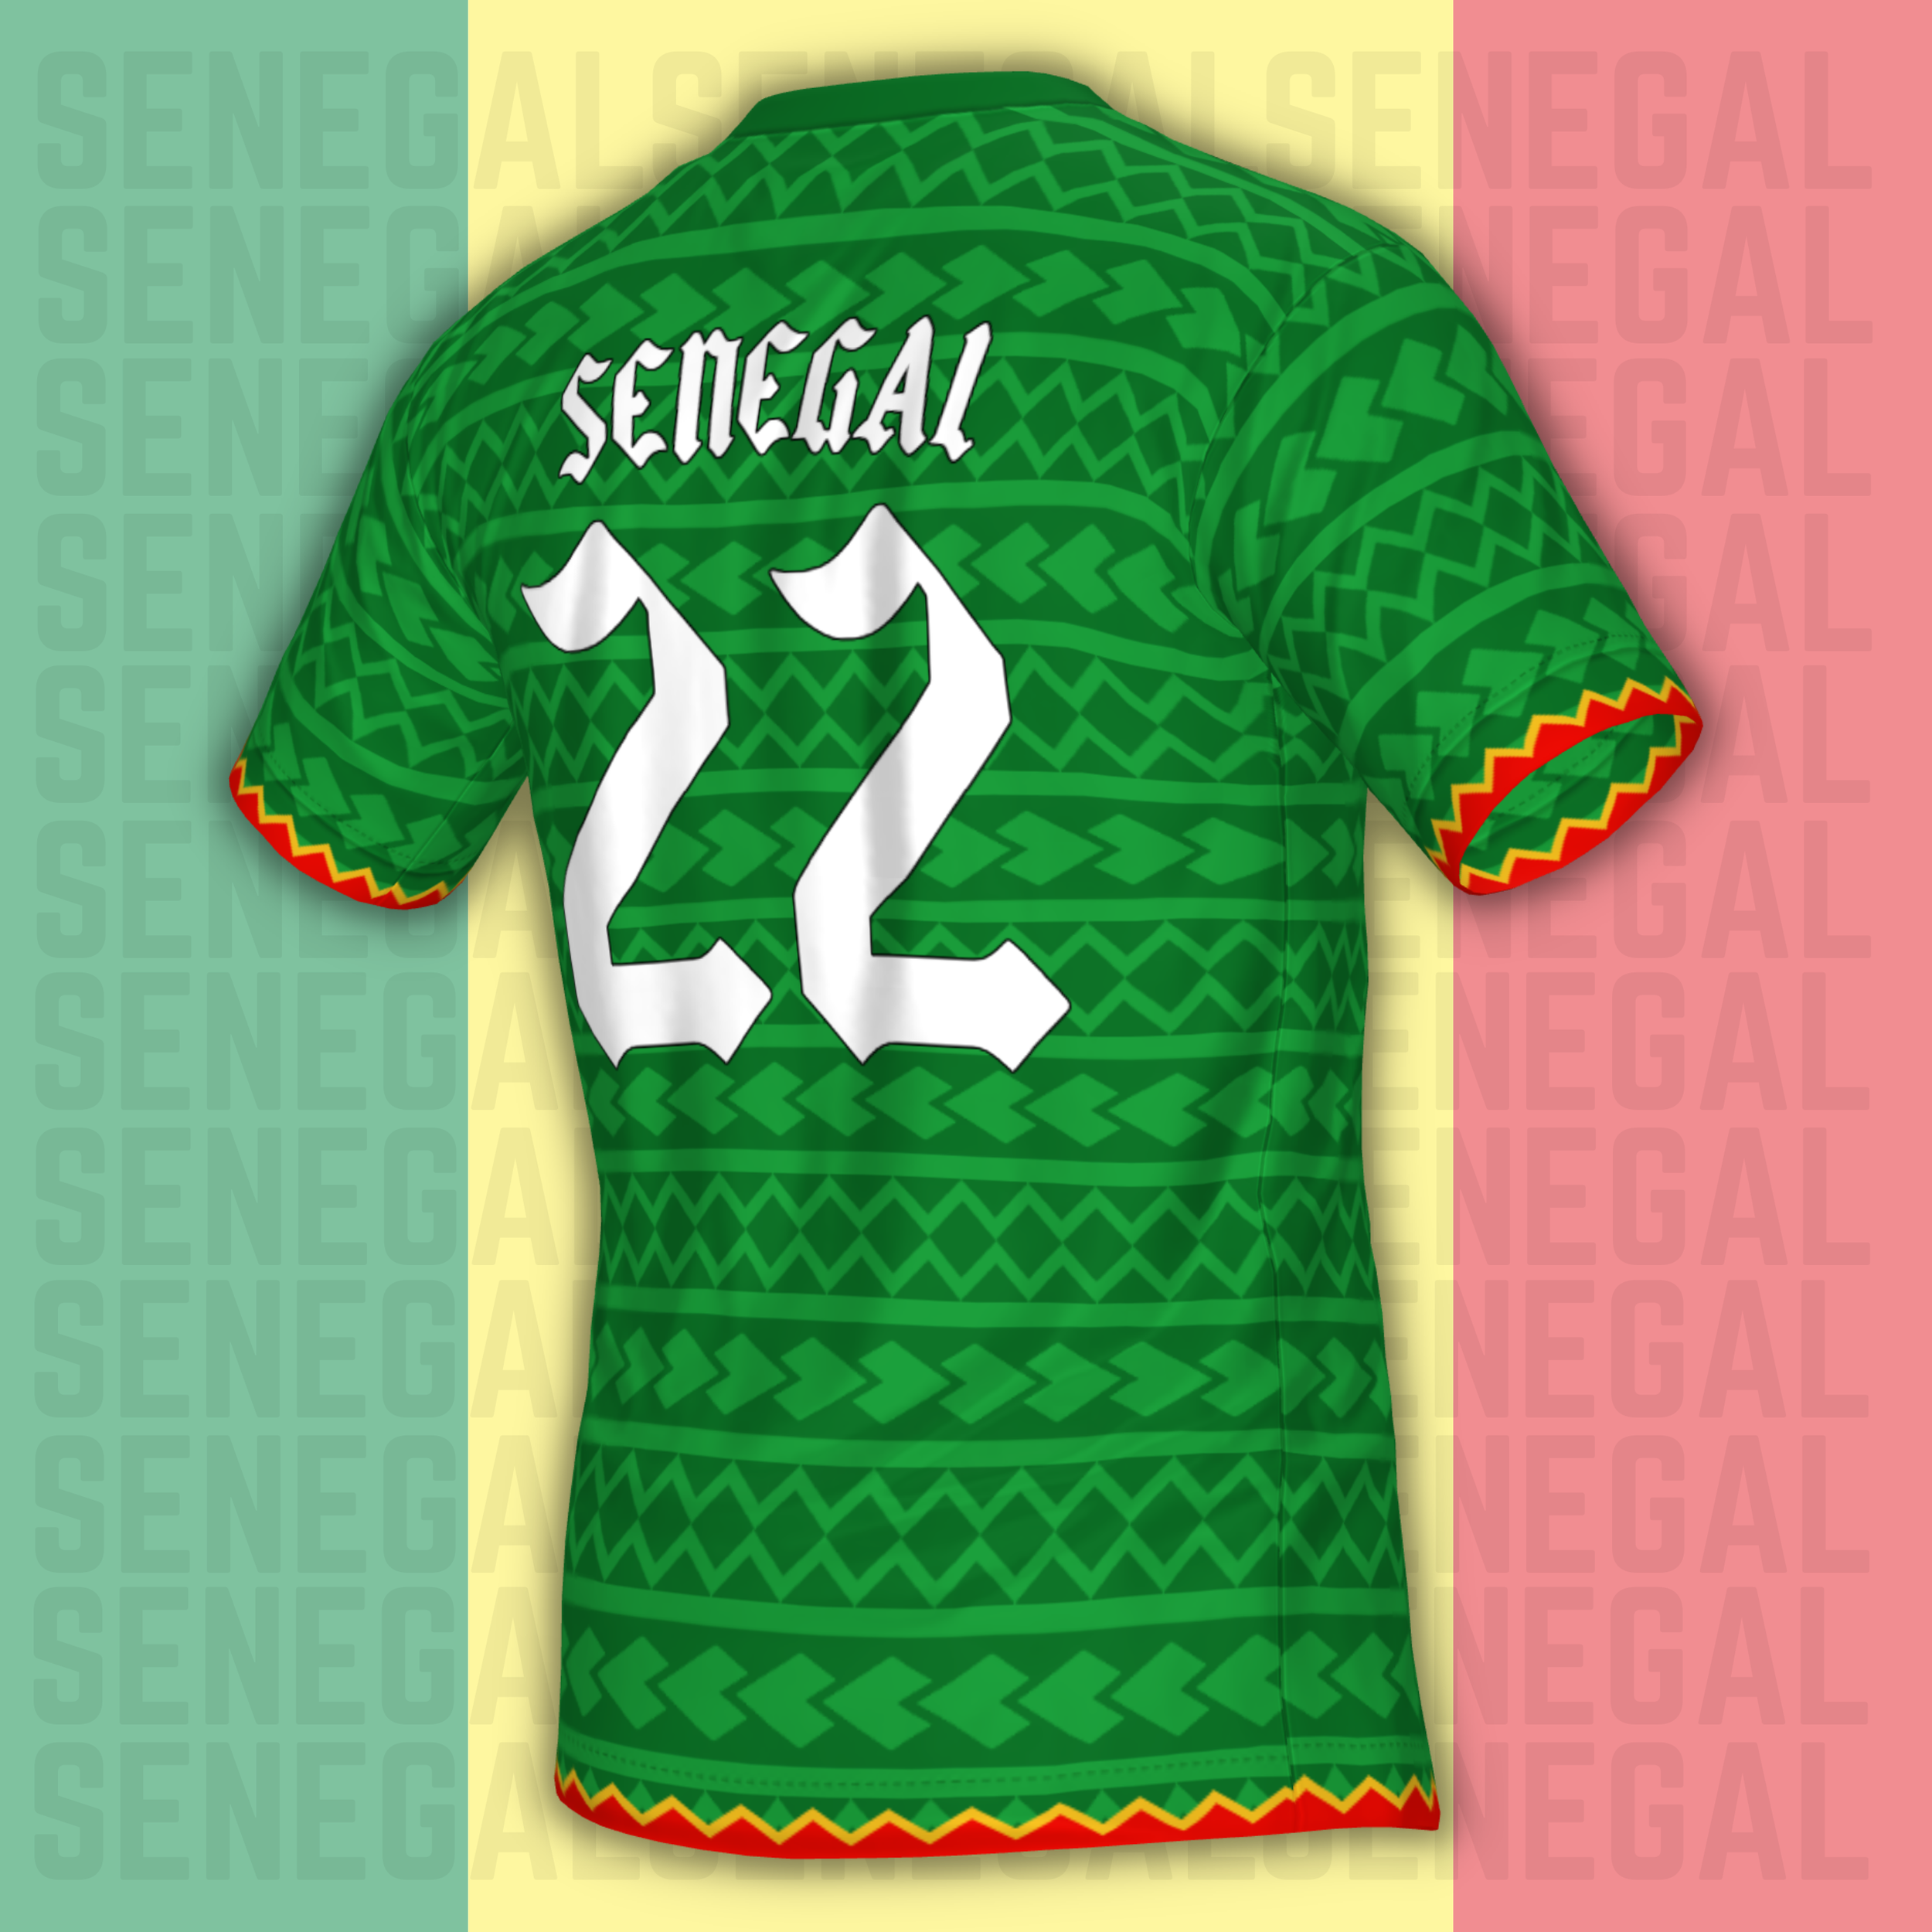 senegal football team kit